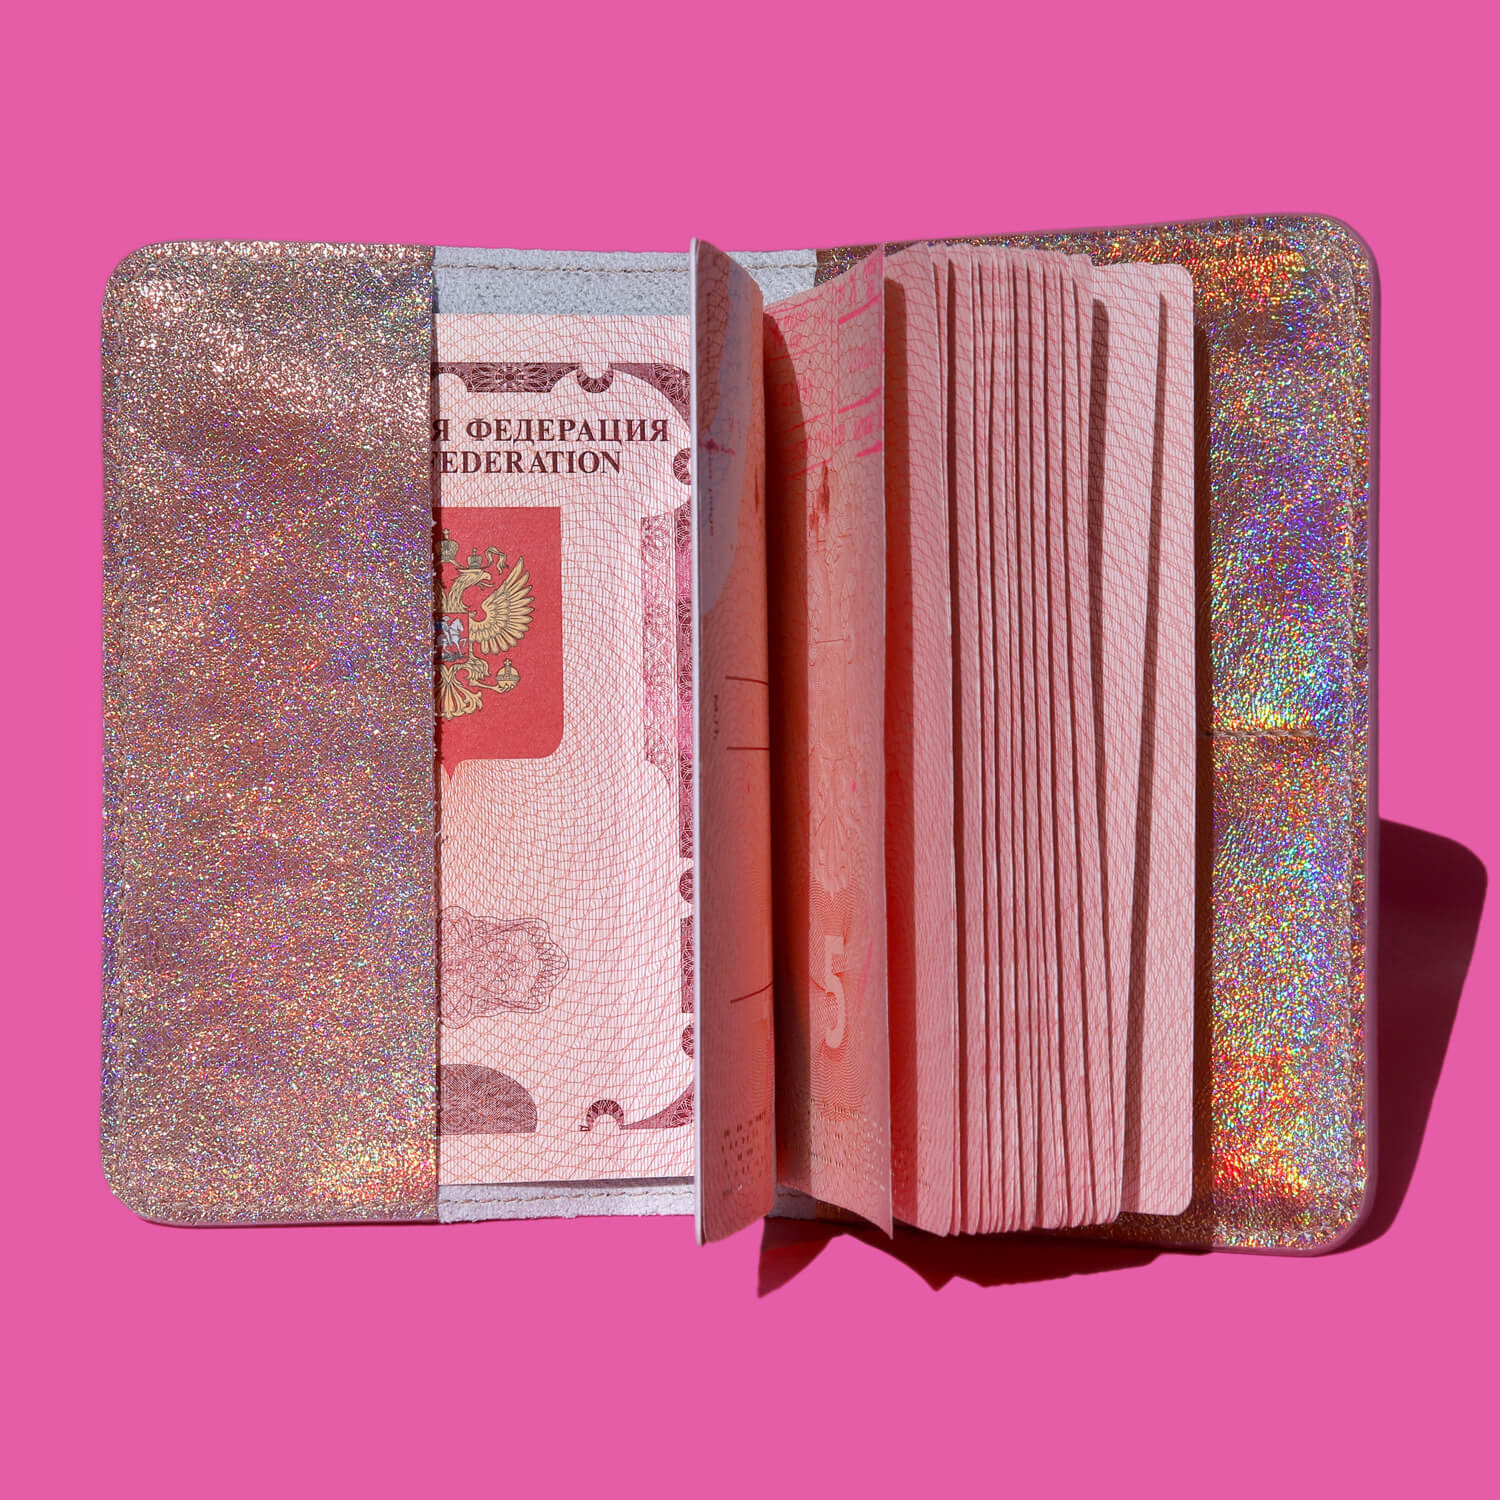 Голографическая обложка для паспорта, цвет Оранжевый, фото 2